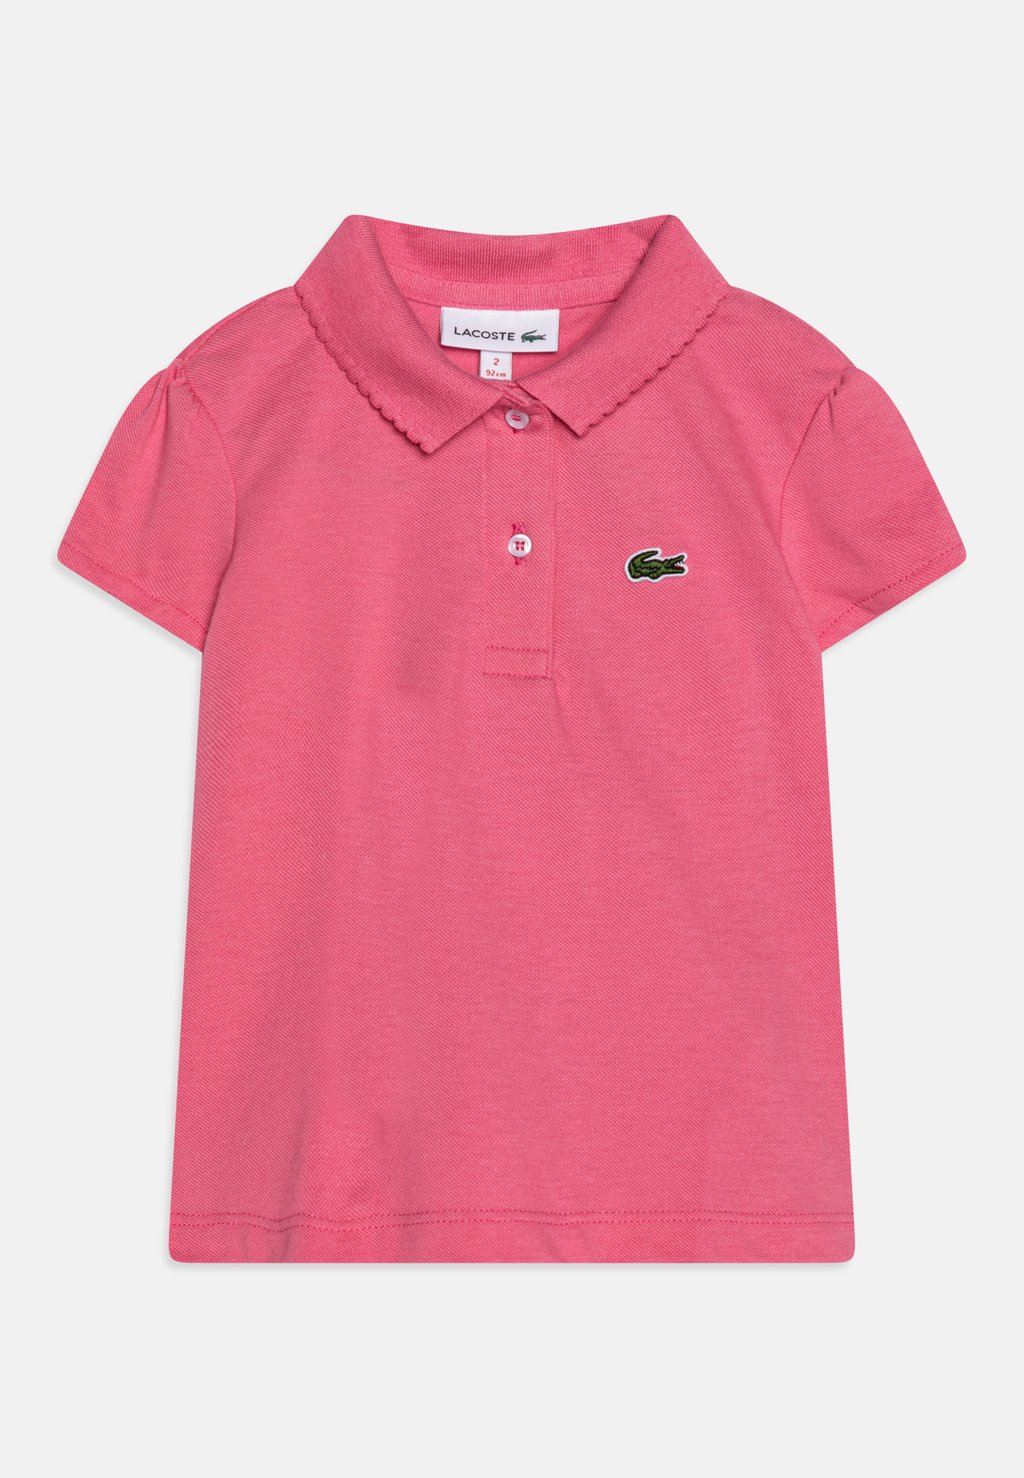 Рубашка-поло Lacoste, резеда розовая резеда